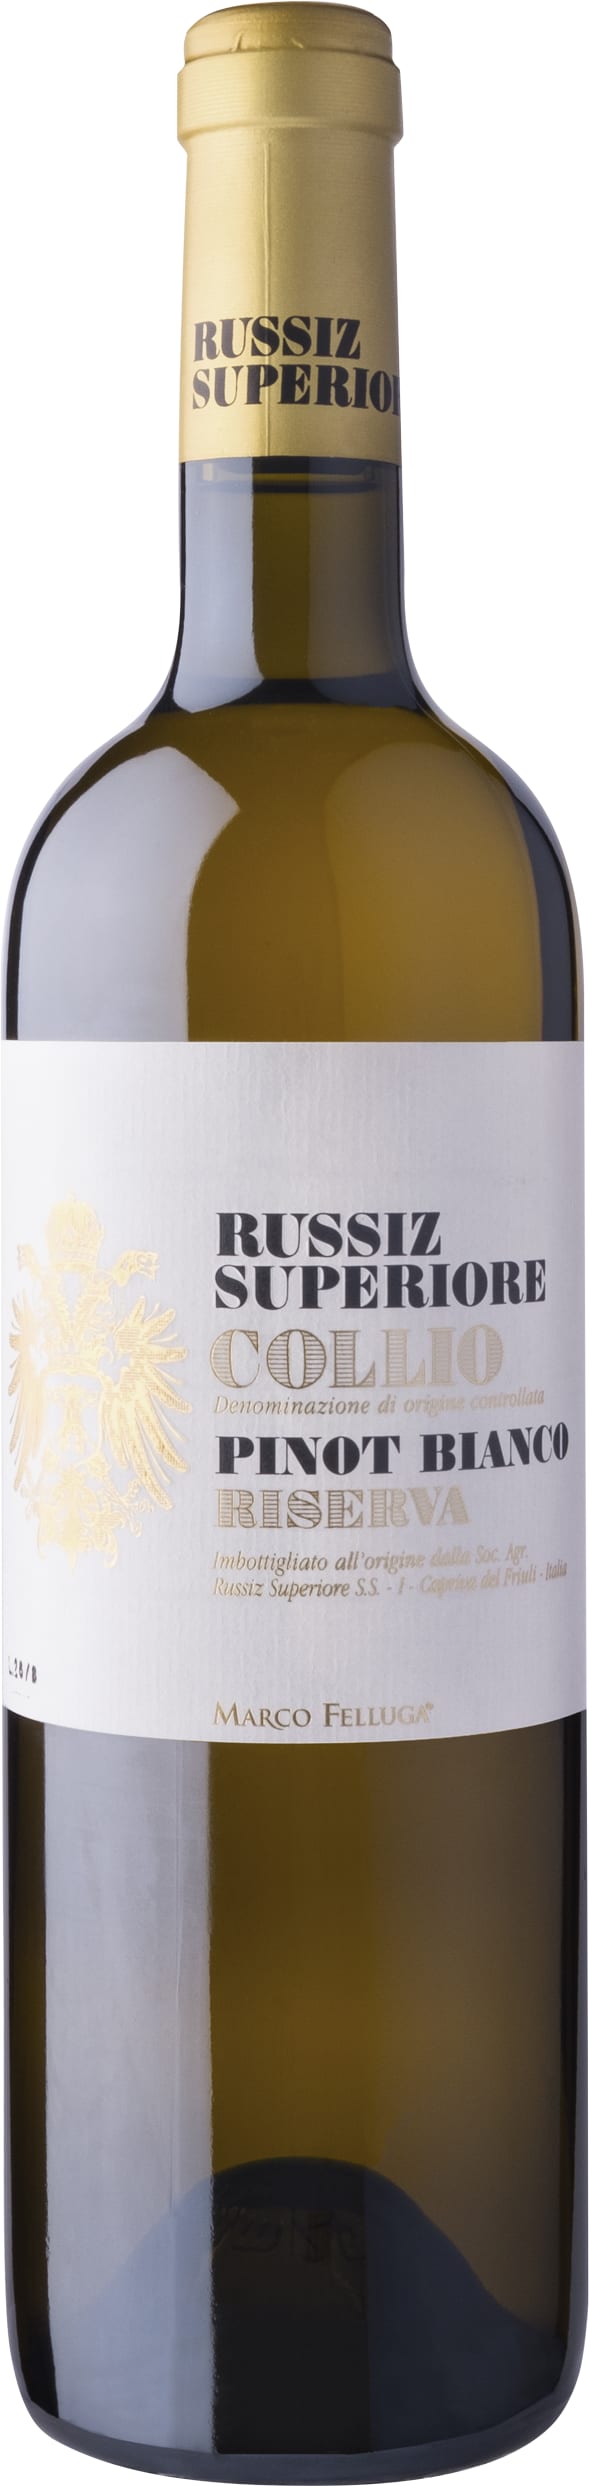 Russiz Superiore Pinot Bianco Riserva, Collio 2016 75cl - Buy Russiz Superiore Wines from GREAT WINES DIRECT wine shop